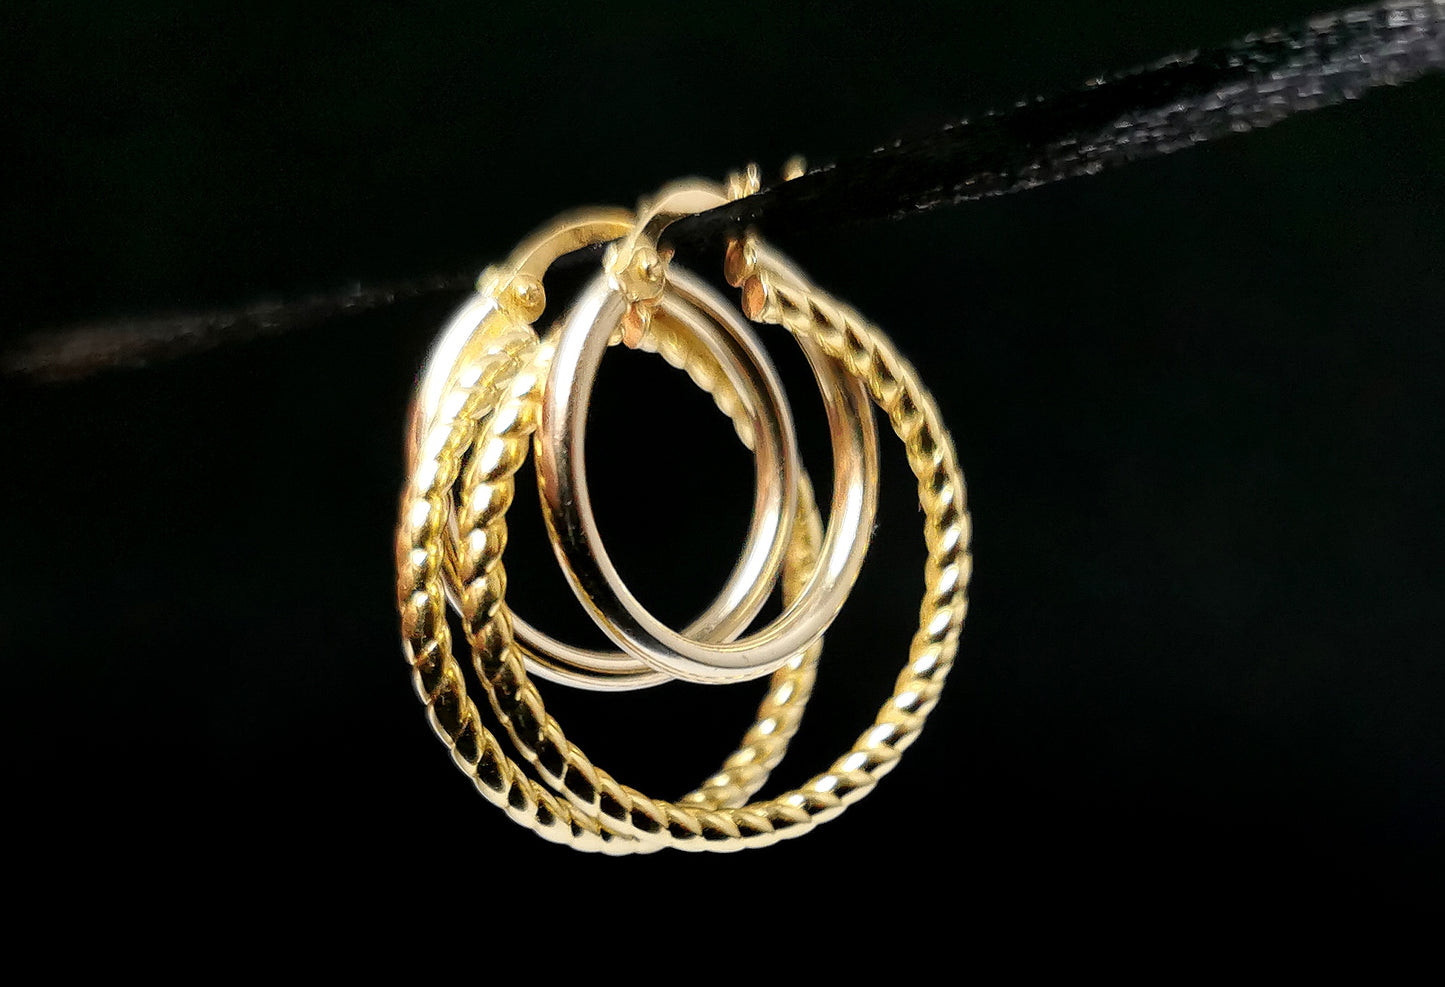 Vintage 9ct gold hoop earrings, twist double hoop